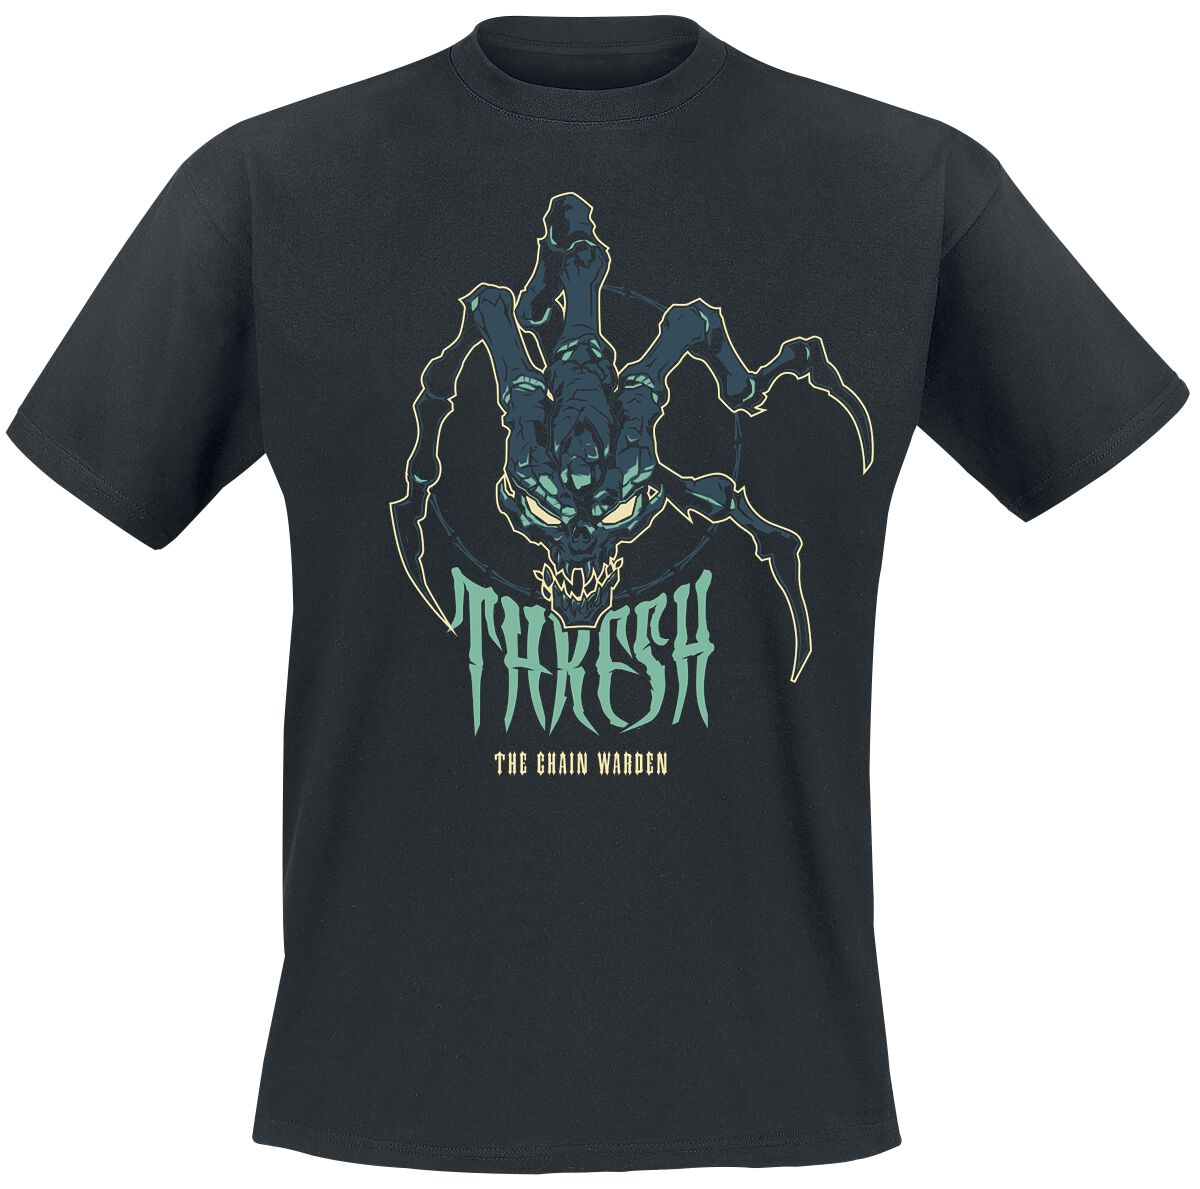 League Of Legends - Gaming T-Shirt - Thresh - The Chain Warden - S bis XXL - für Männer - Größe S - schwarz  - EMP exklusives Merchandise!